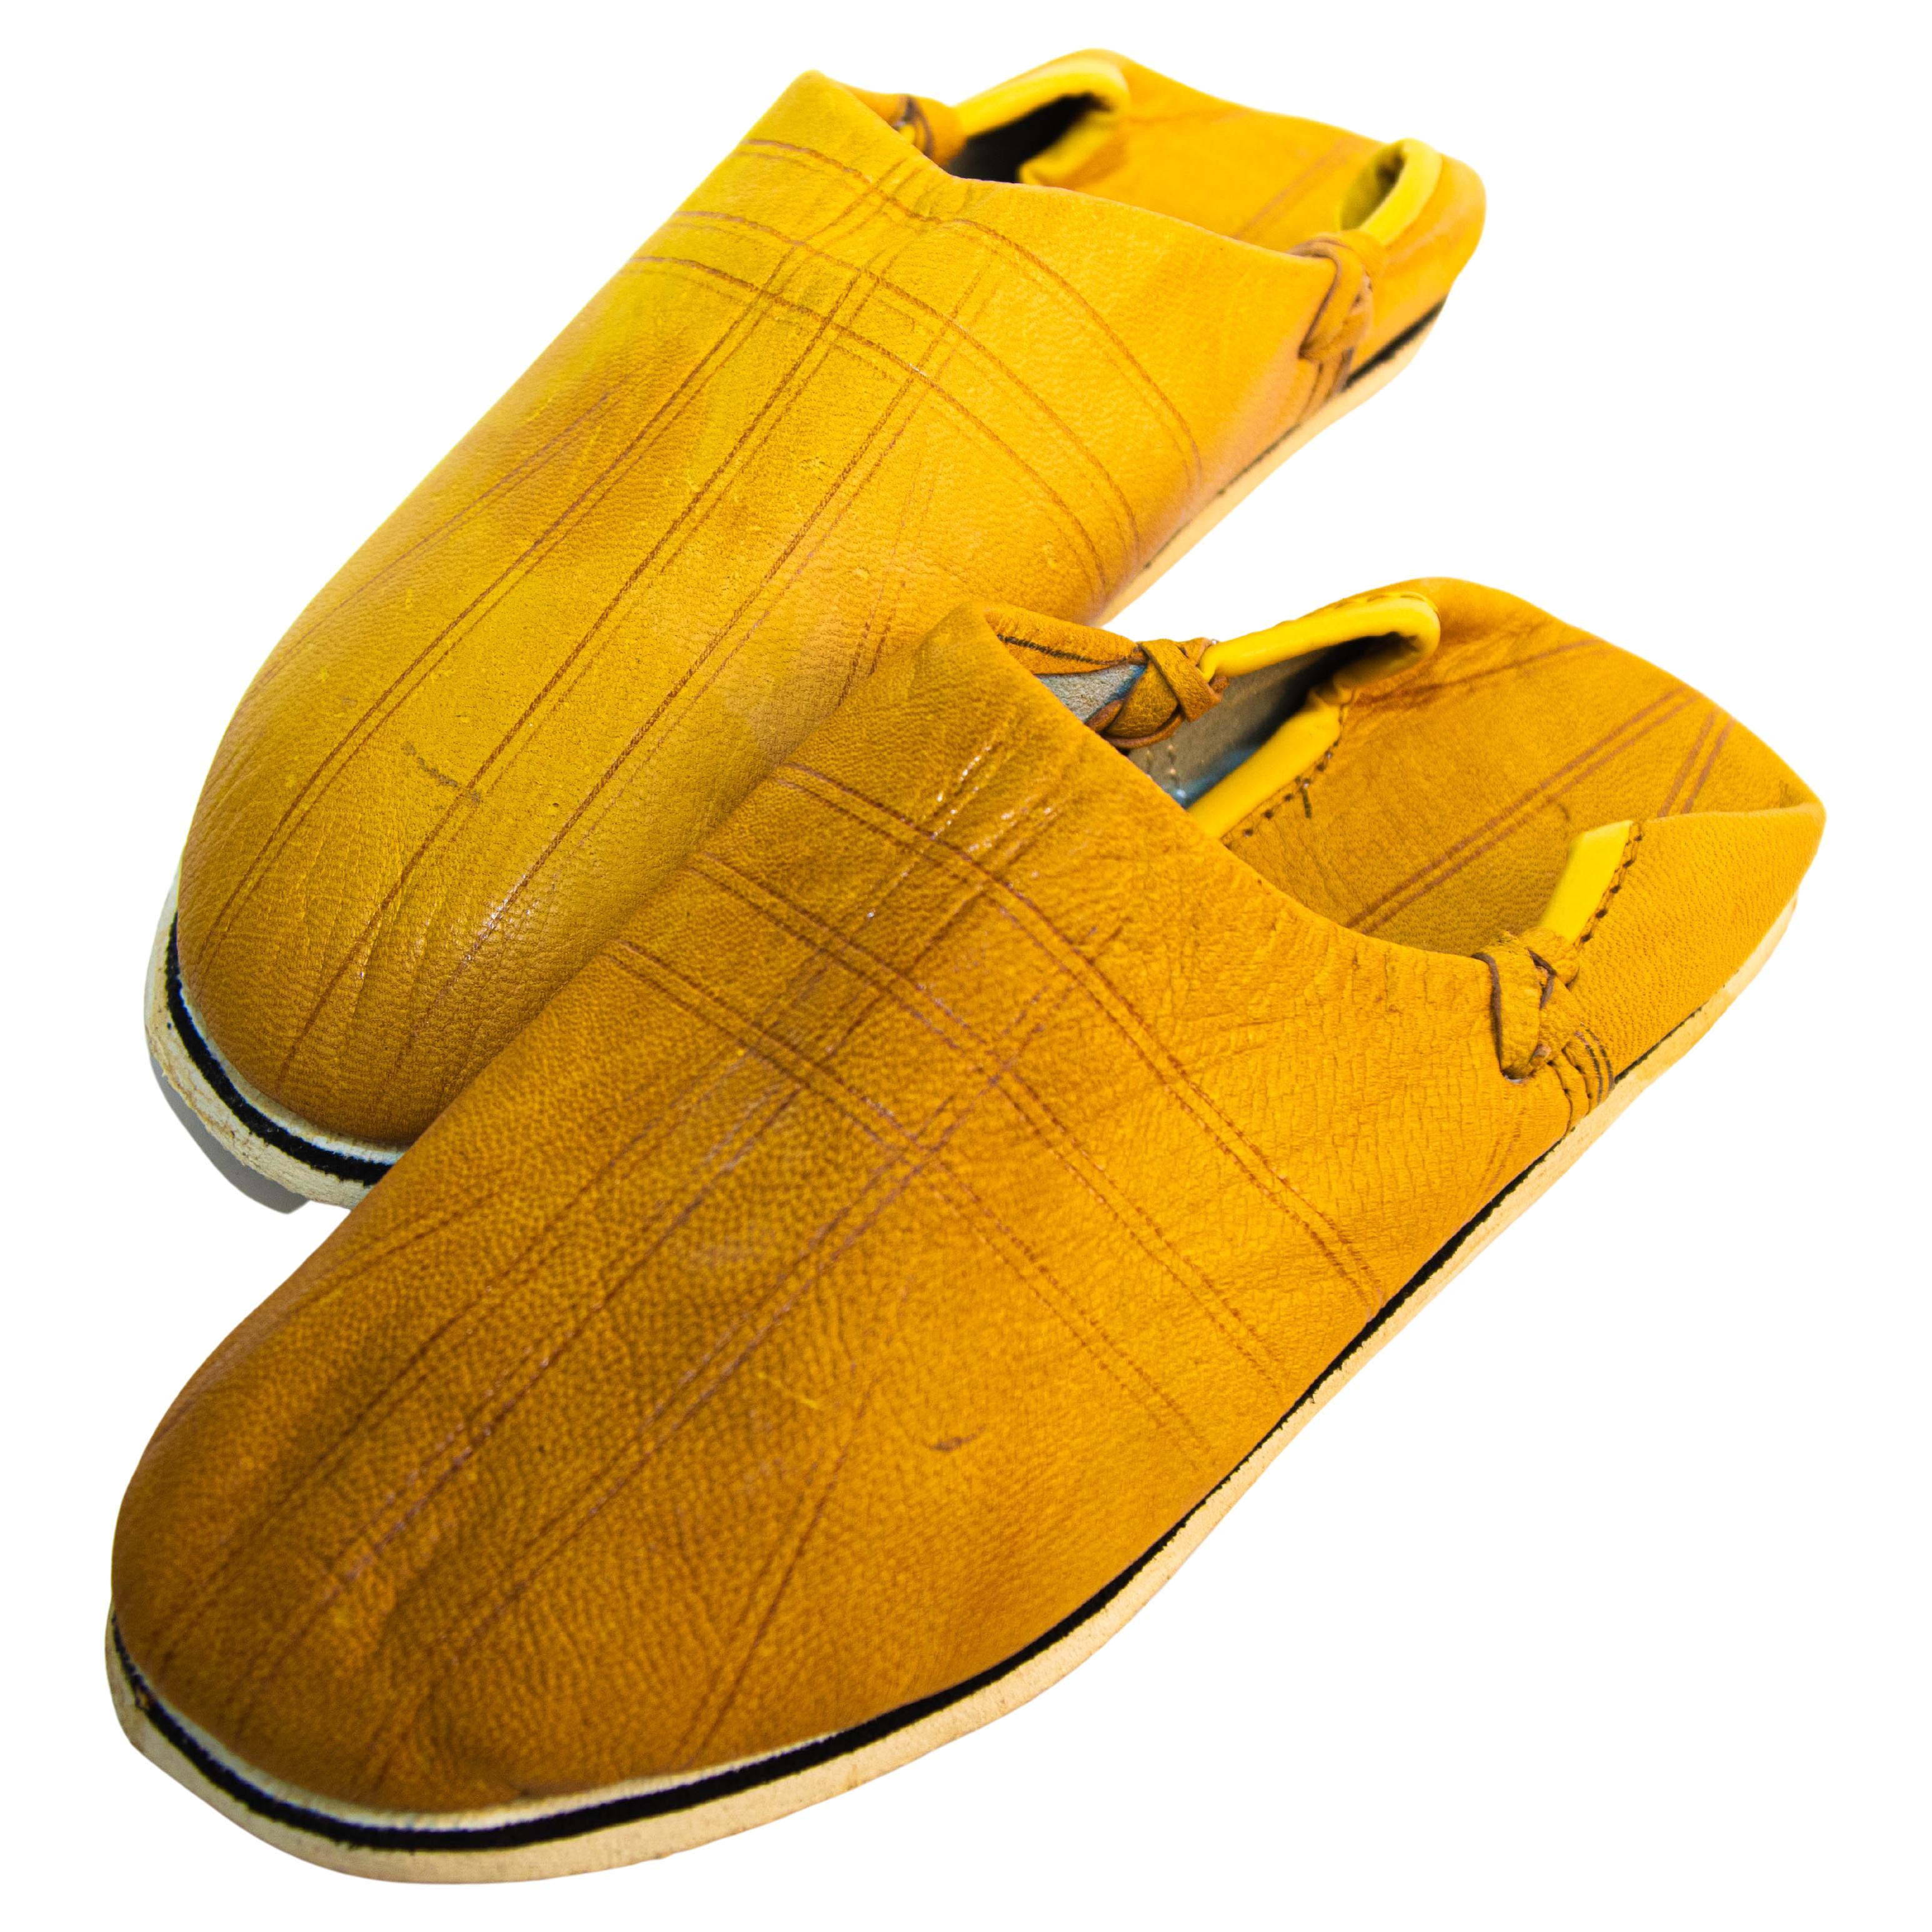 Marokkanische Babouches-Schuhe aus gelbem Leder, handgefertigt